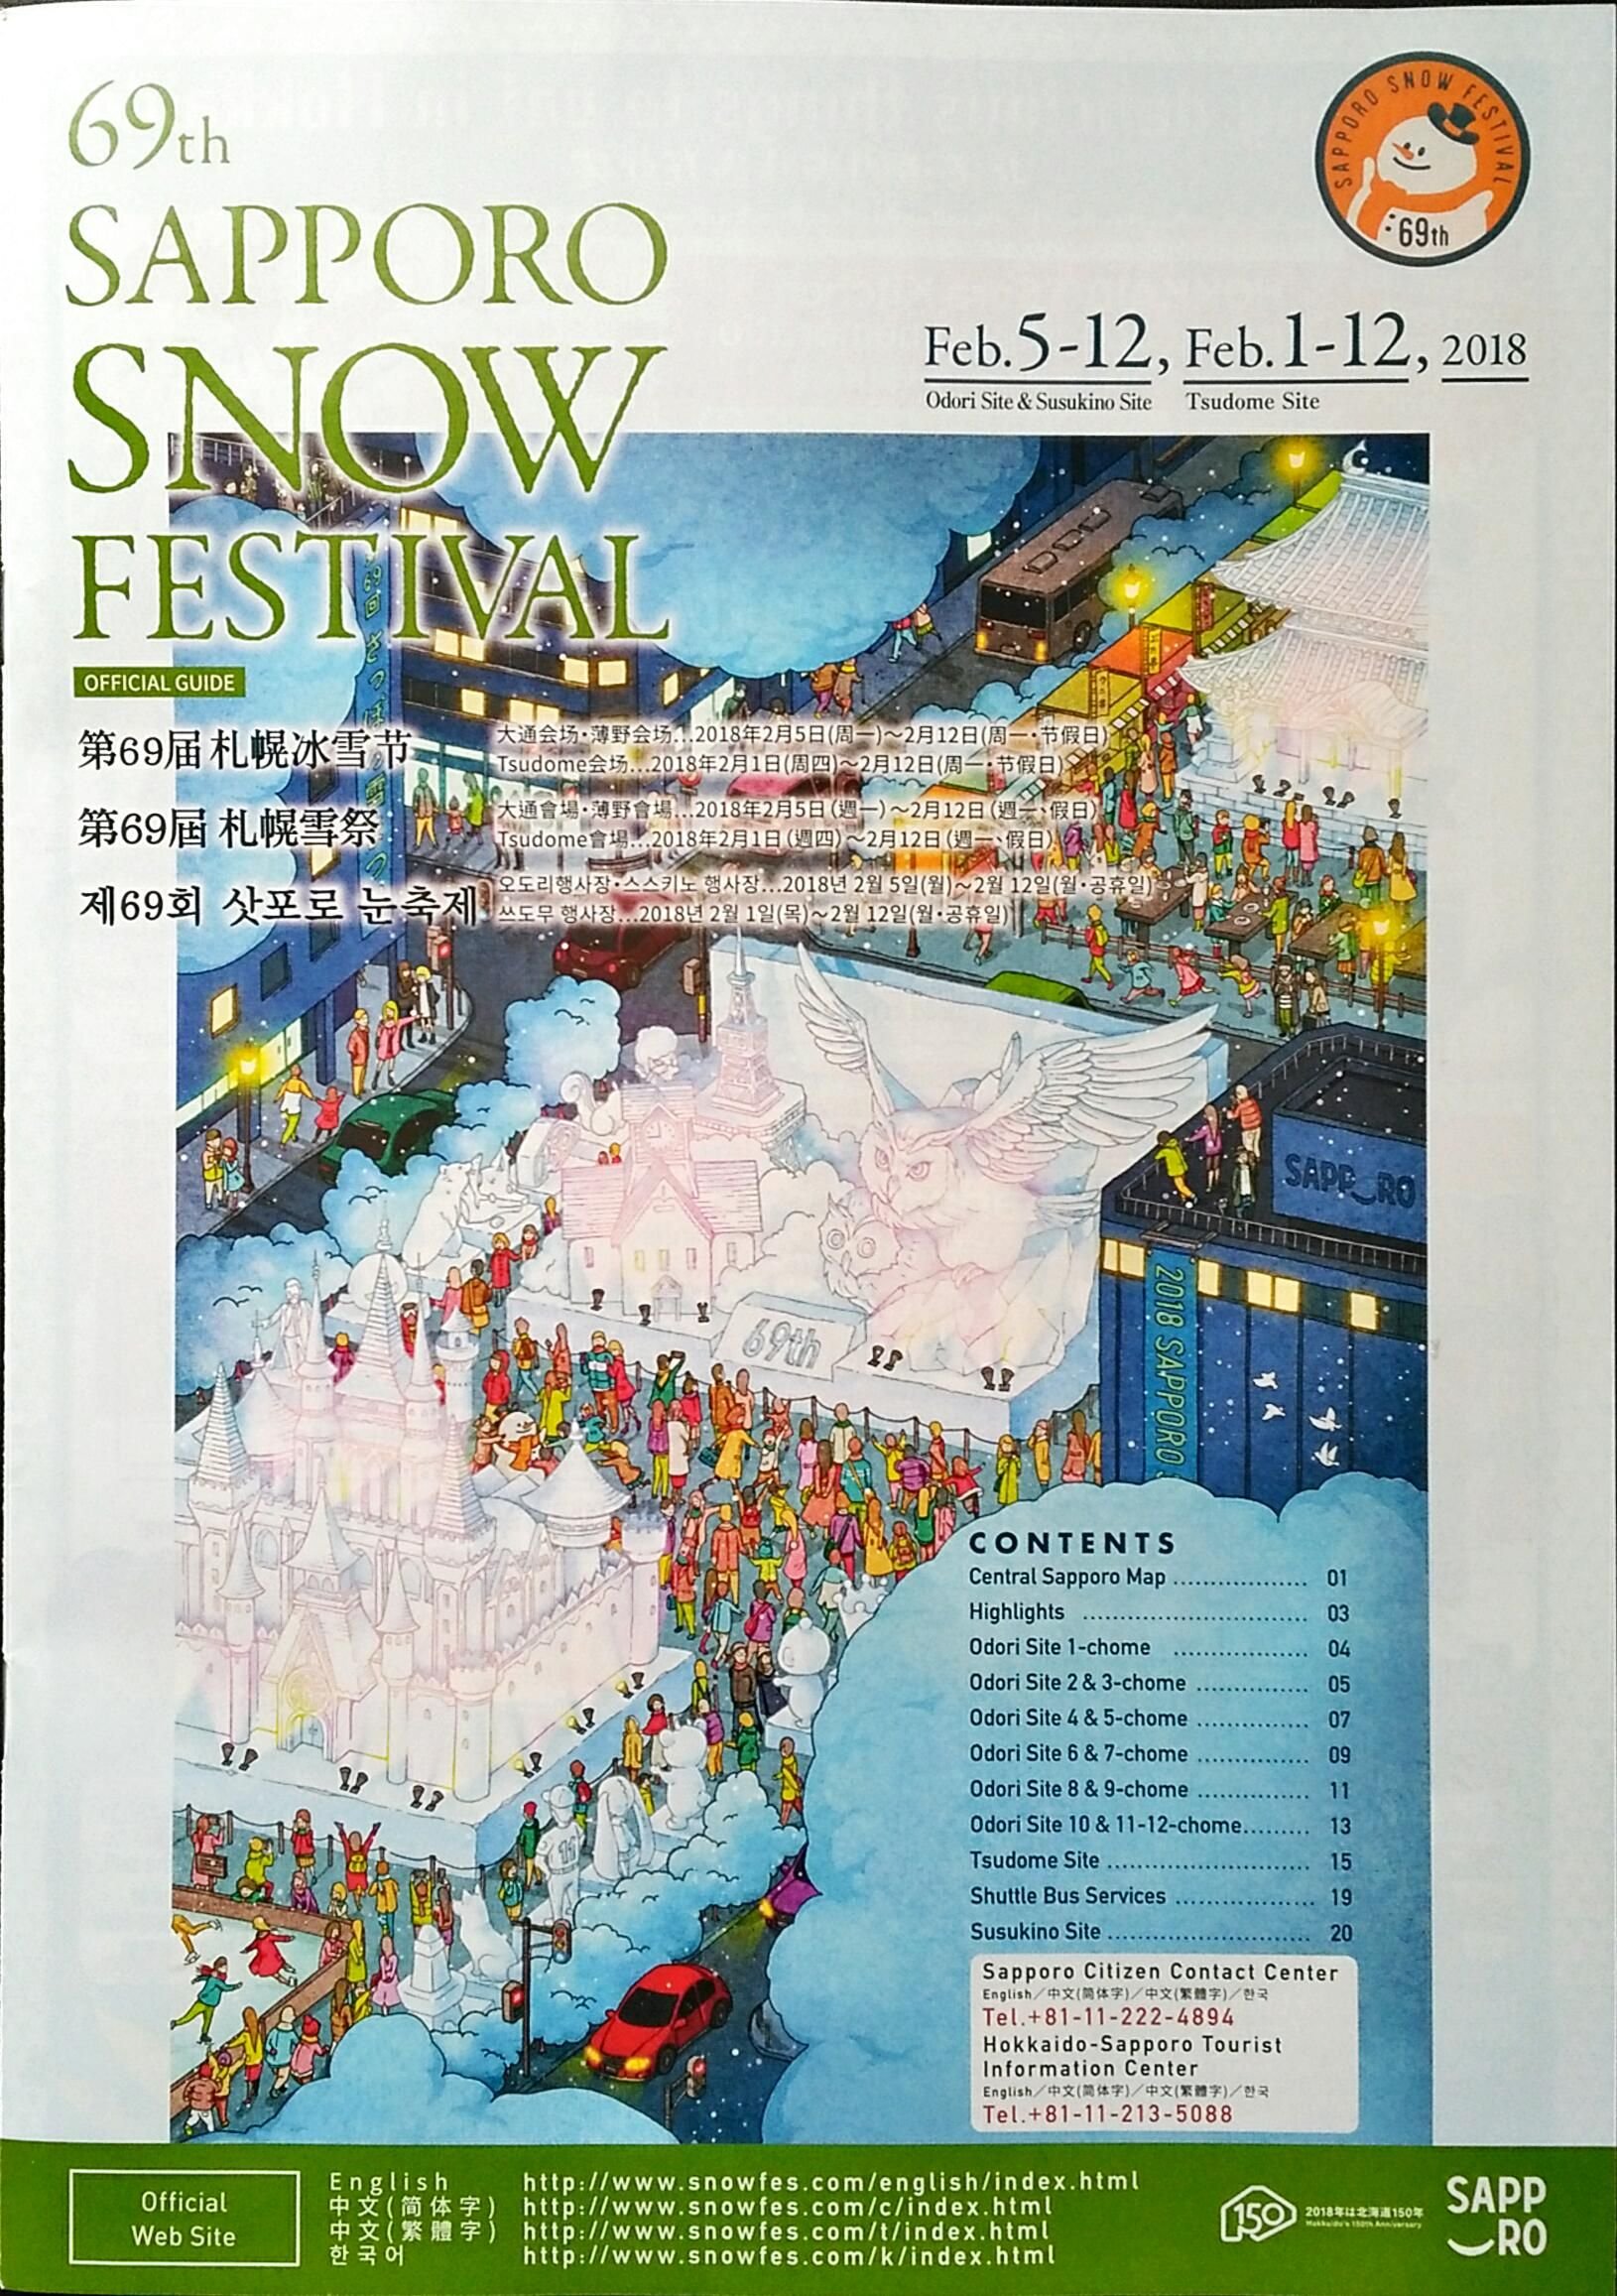 Festival De La Nieve Sapporo 1 12 Febrero De 2018 雪まつり